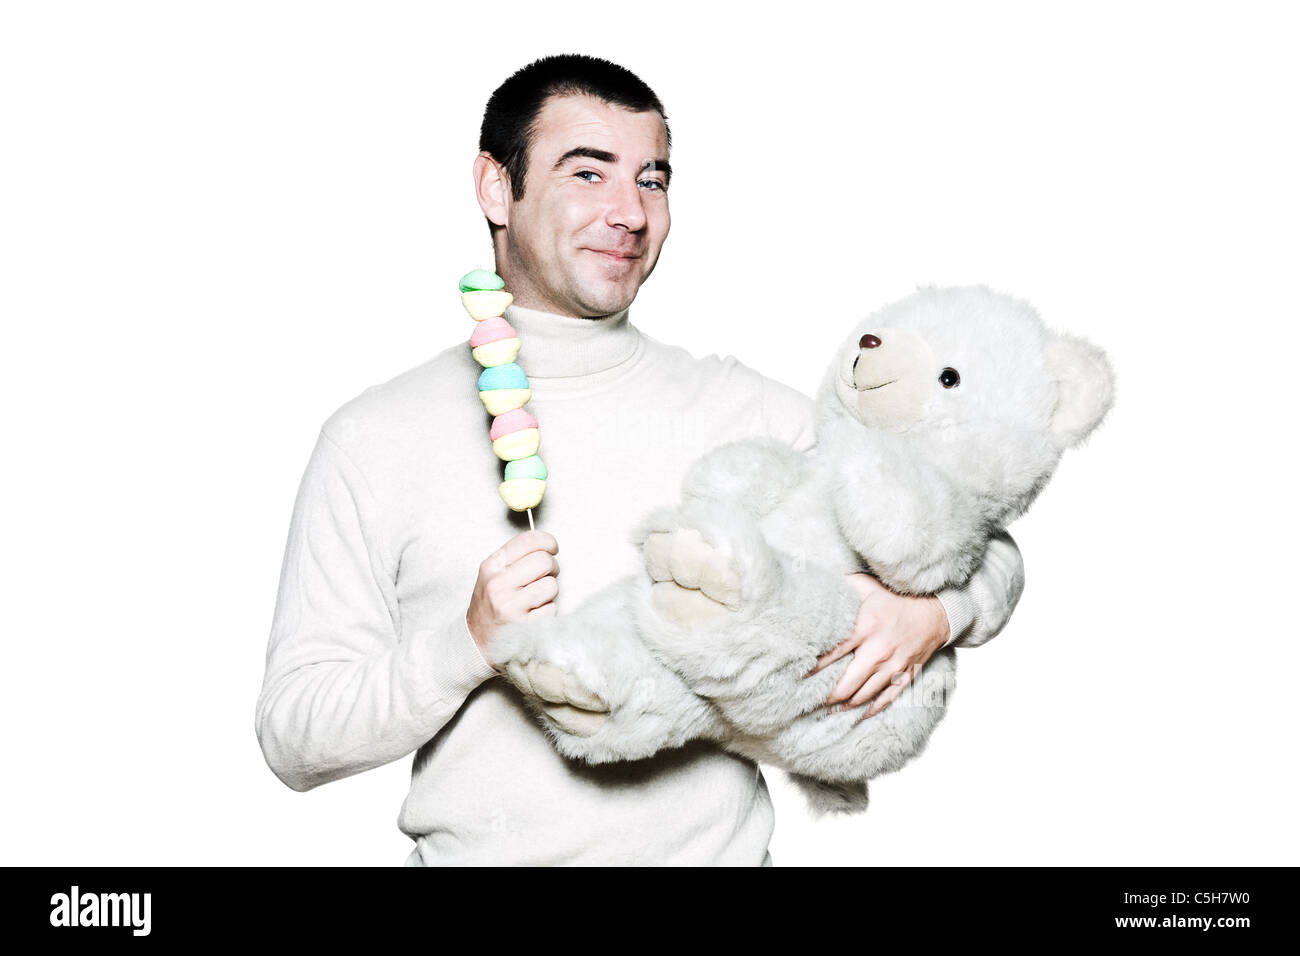 Porträt von einem kindischen reifen Mann mit Spielzeug und Teddybären im Studio auf weißen Hintergrund isoliert Stockfoto